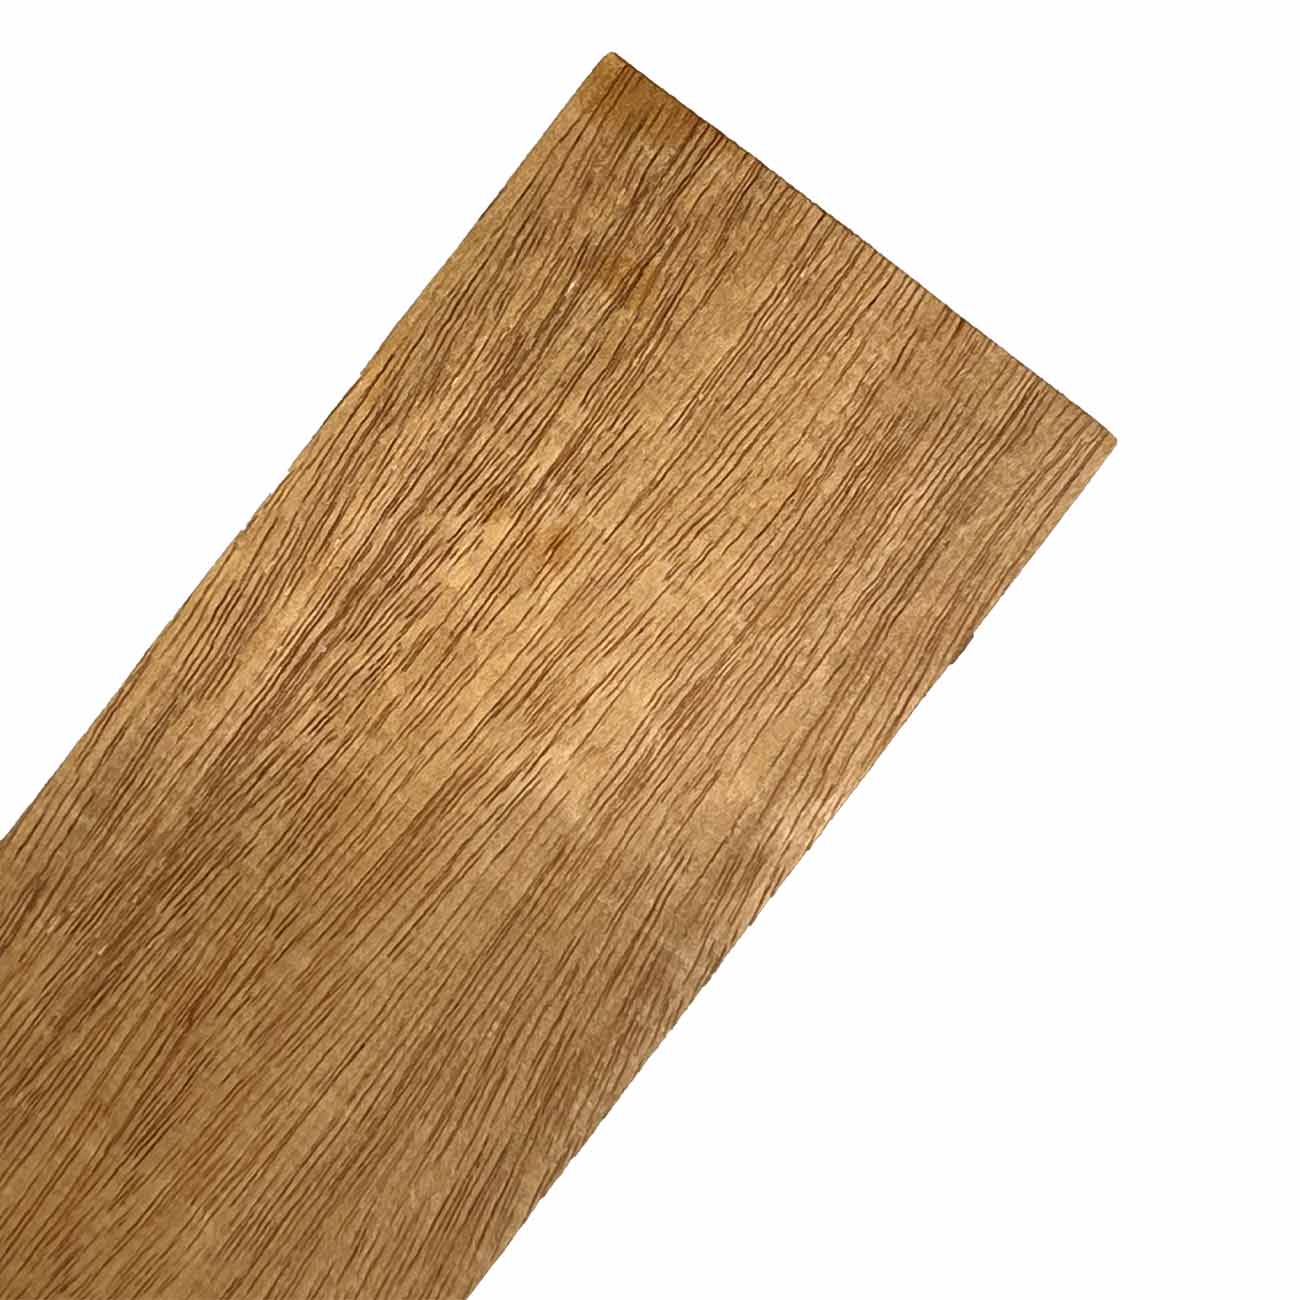 Fijian Mahogany Thin Stock Lumber Board Wood Blank - Exotic Wood Zone Thin Stock Lumber